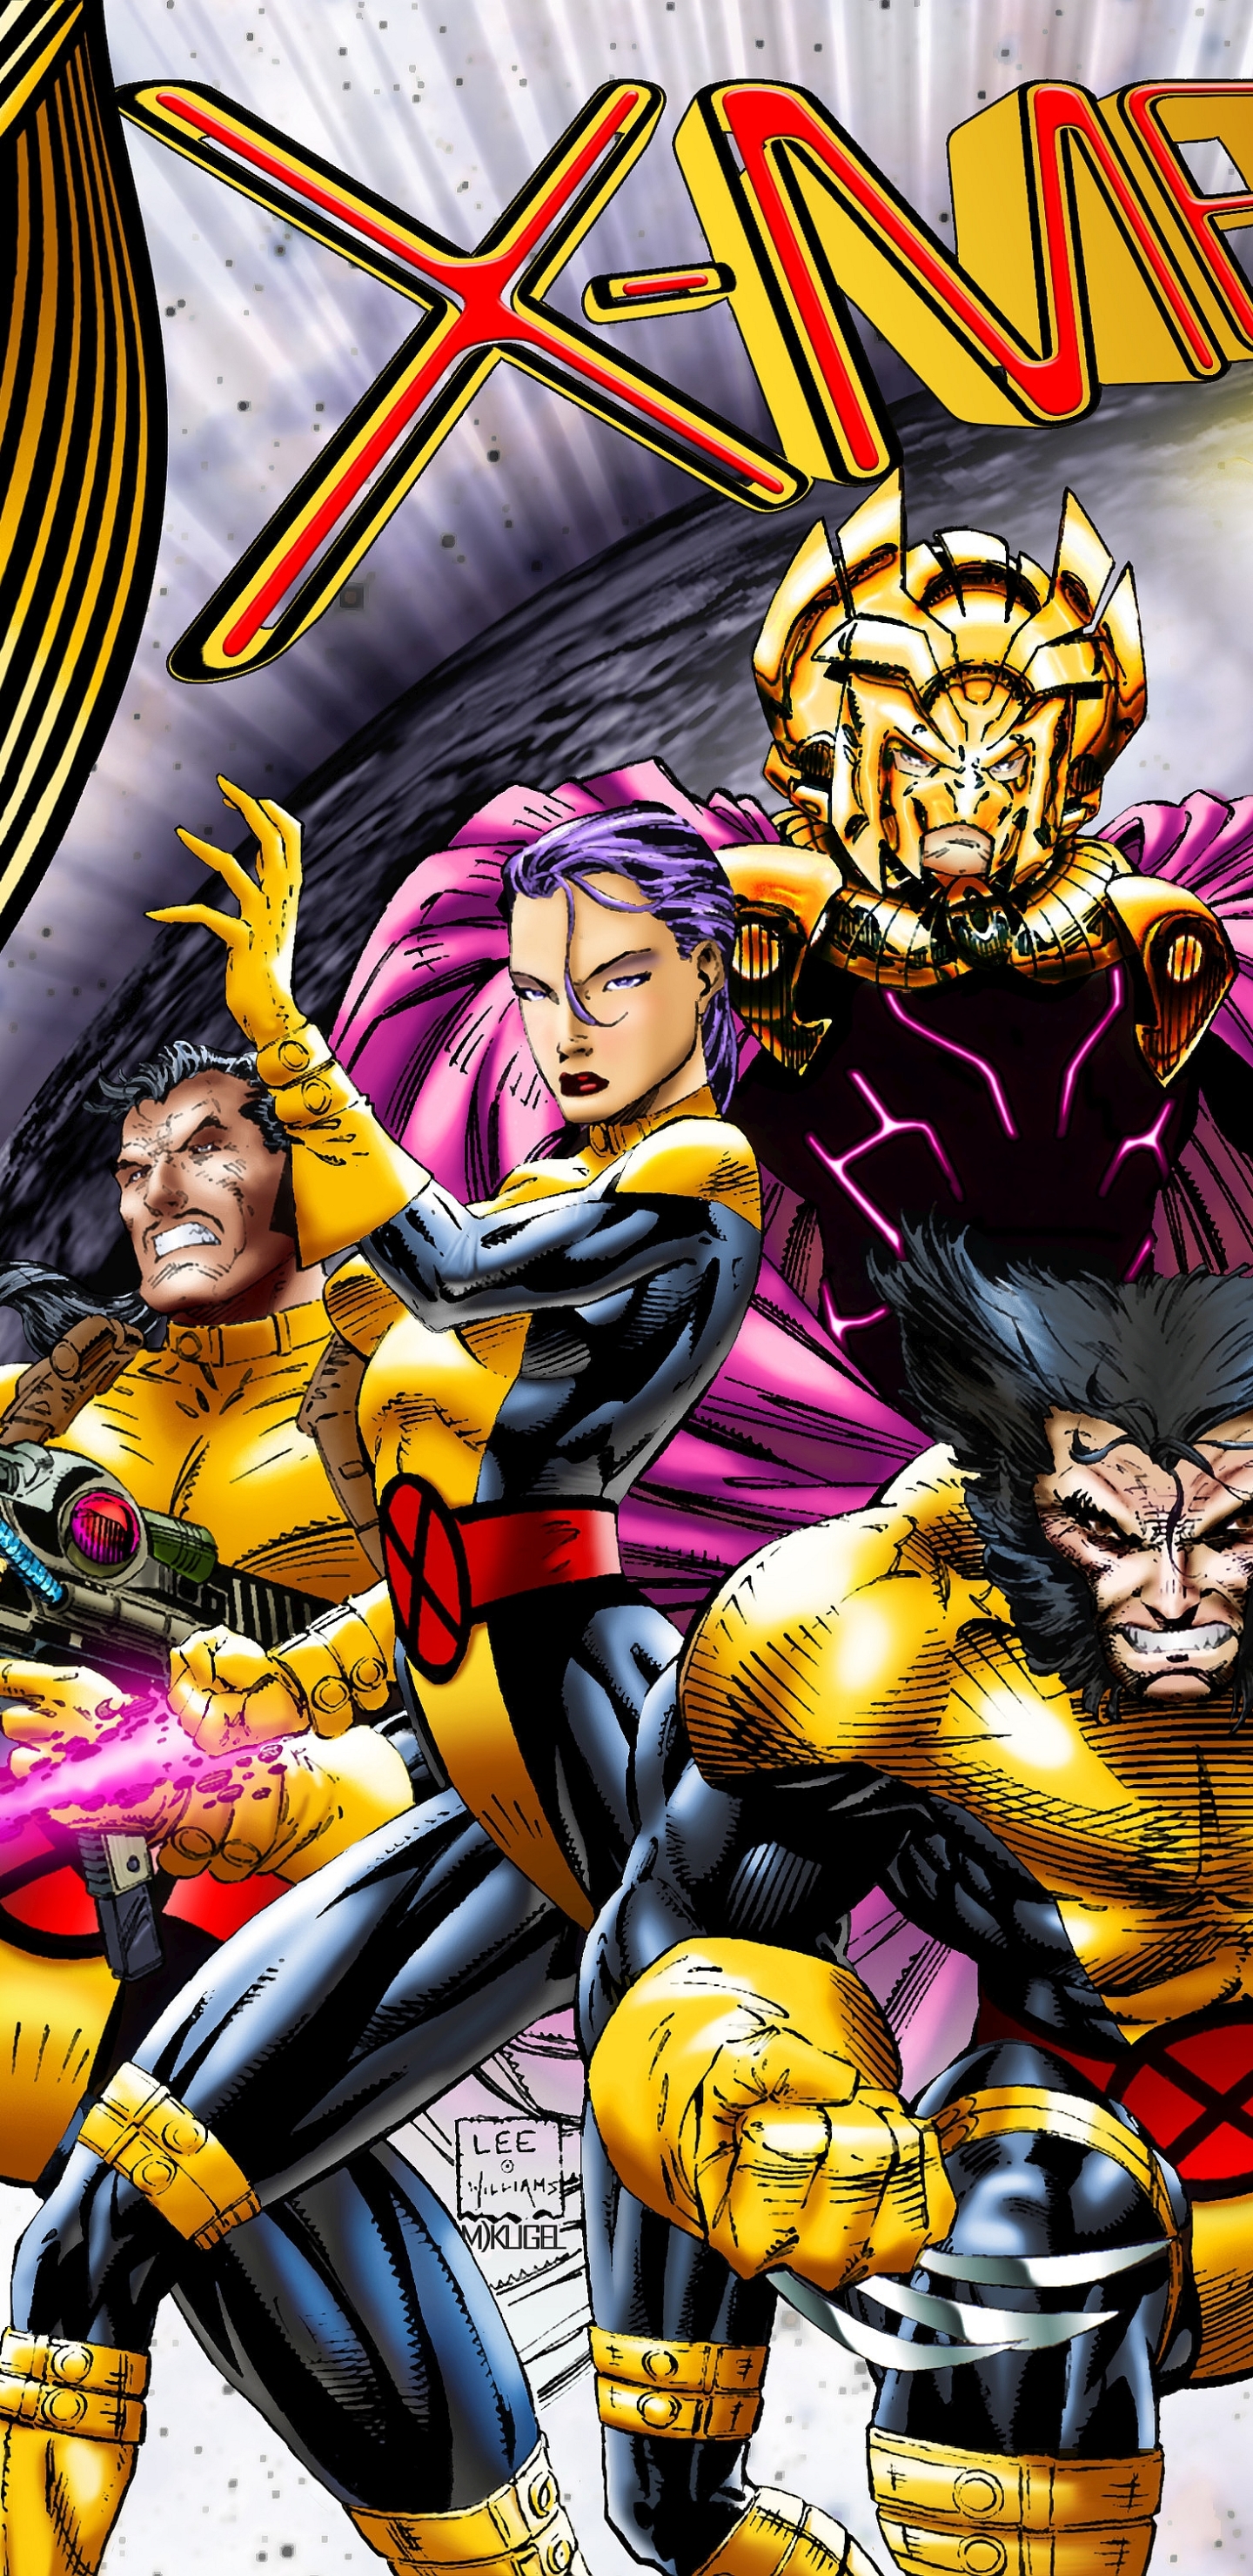 Descarga gratuita de fondo de pantalla para móvil de X Men, Glotón, Historietas, Psylocke (Marvel Comics), Fragua (Marvel Comics).